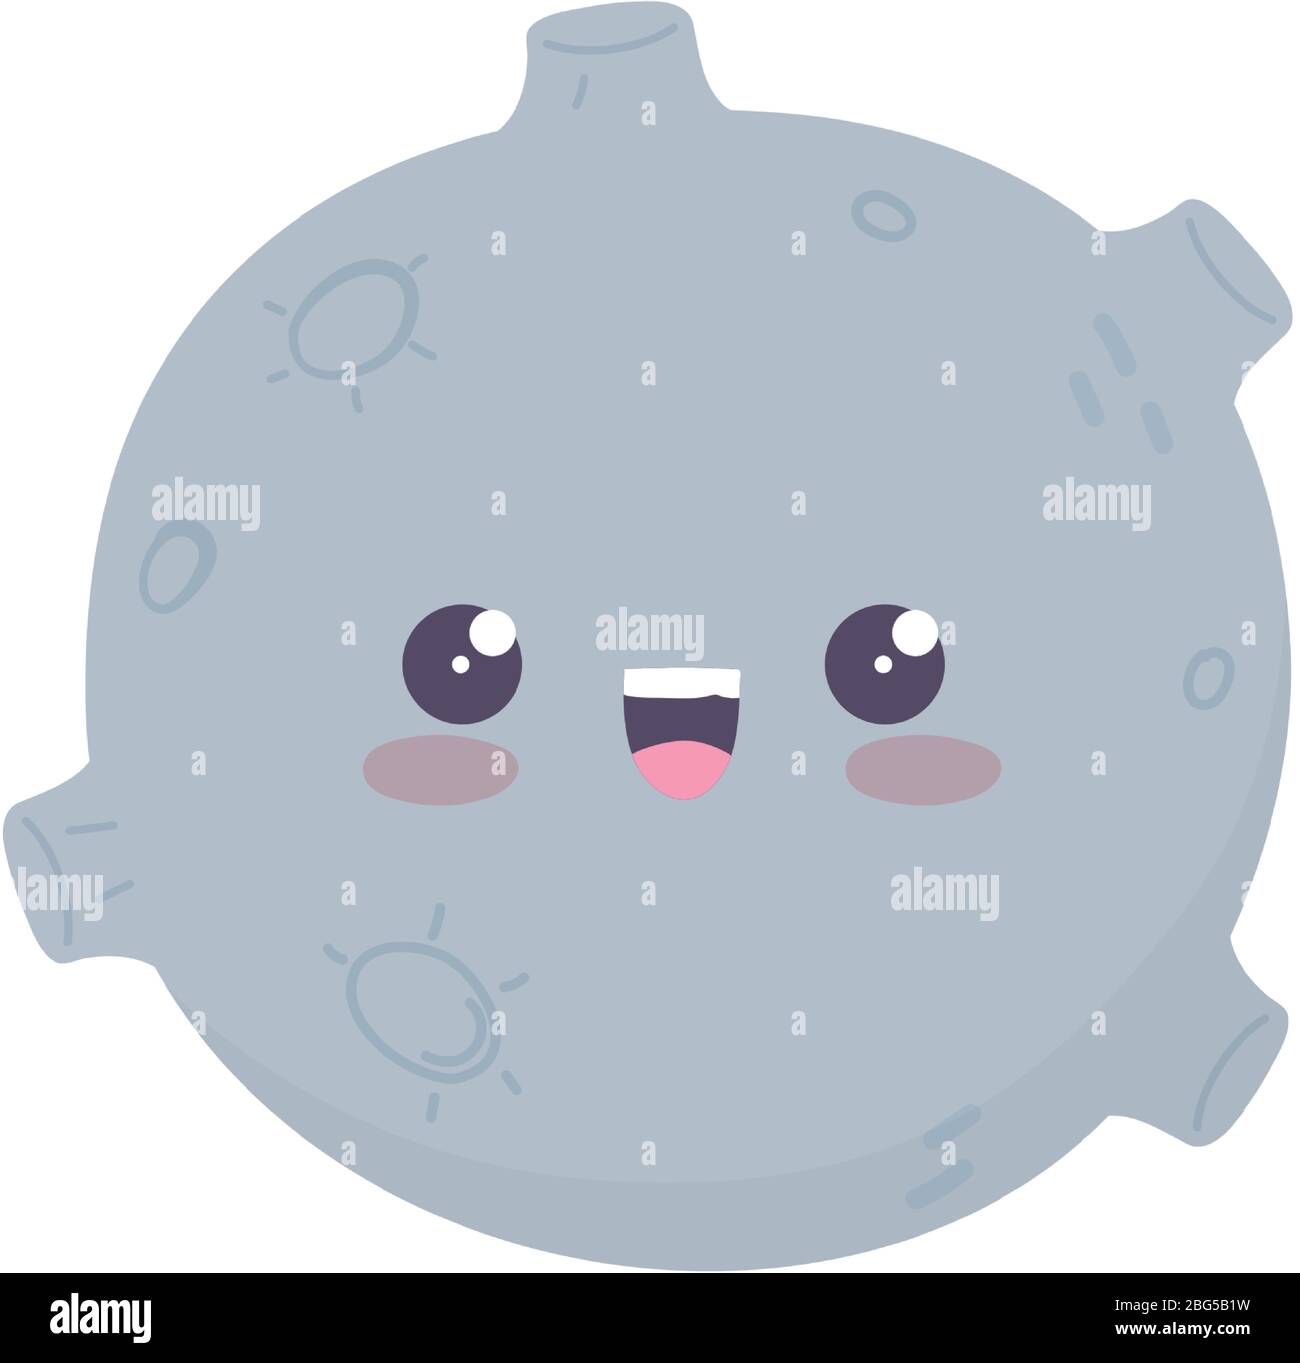 Kawaii glücklich Mond niedlich Cartoon isoliert Symbol auf weißem  Hintergrund Vektor-Illustration Stock-Vektorgrafik - Alamy